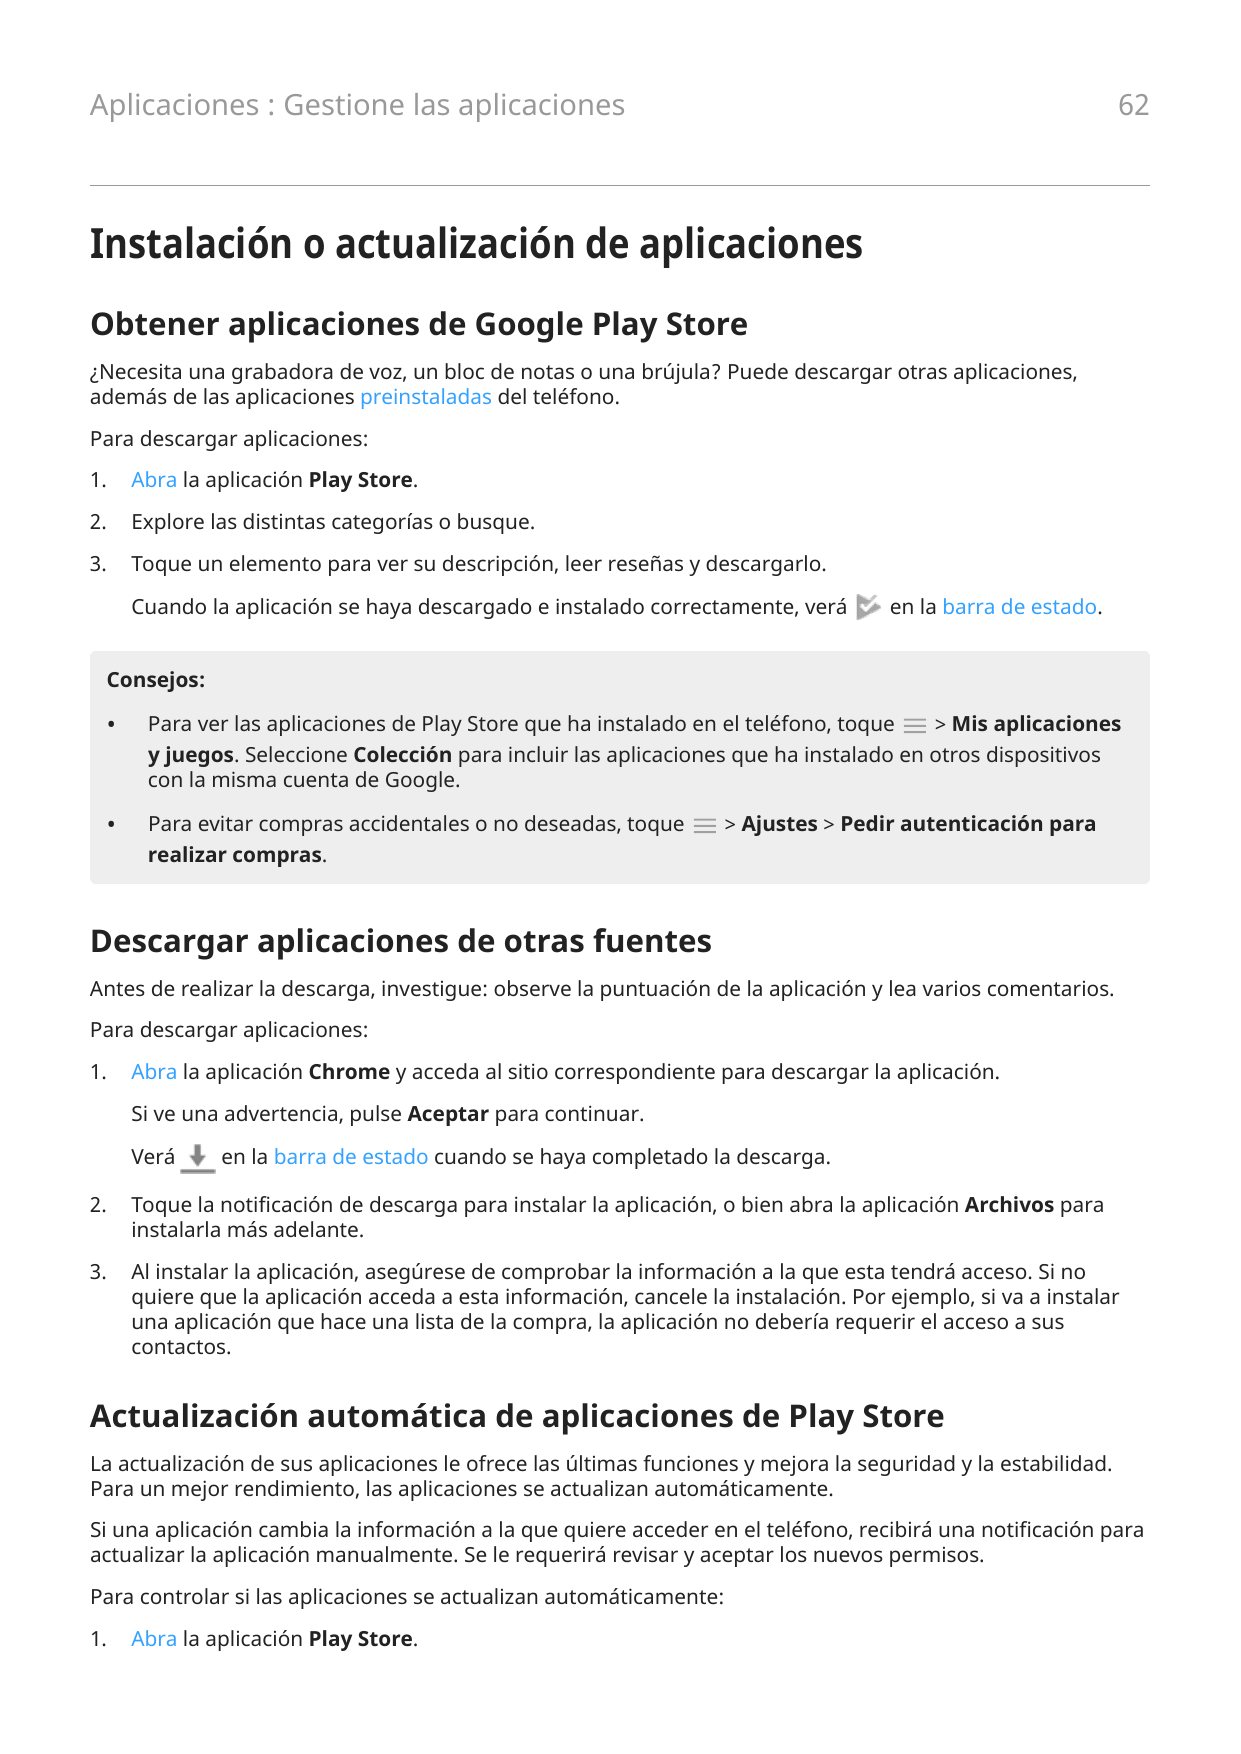 62Aplicaciones : Gestione las aplicacionesInstalación o actualización de aplicacionesObtener aplicaciones de Google Play Store¿N